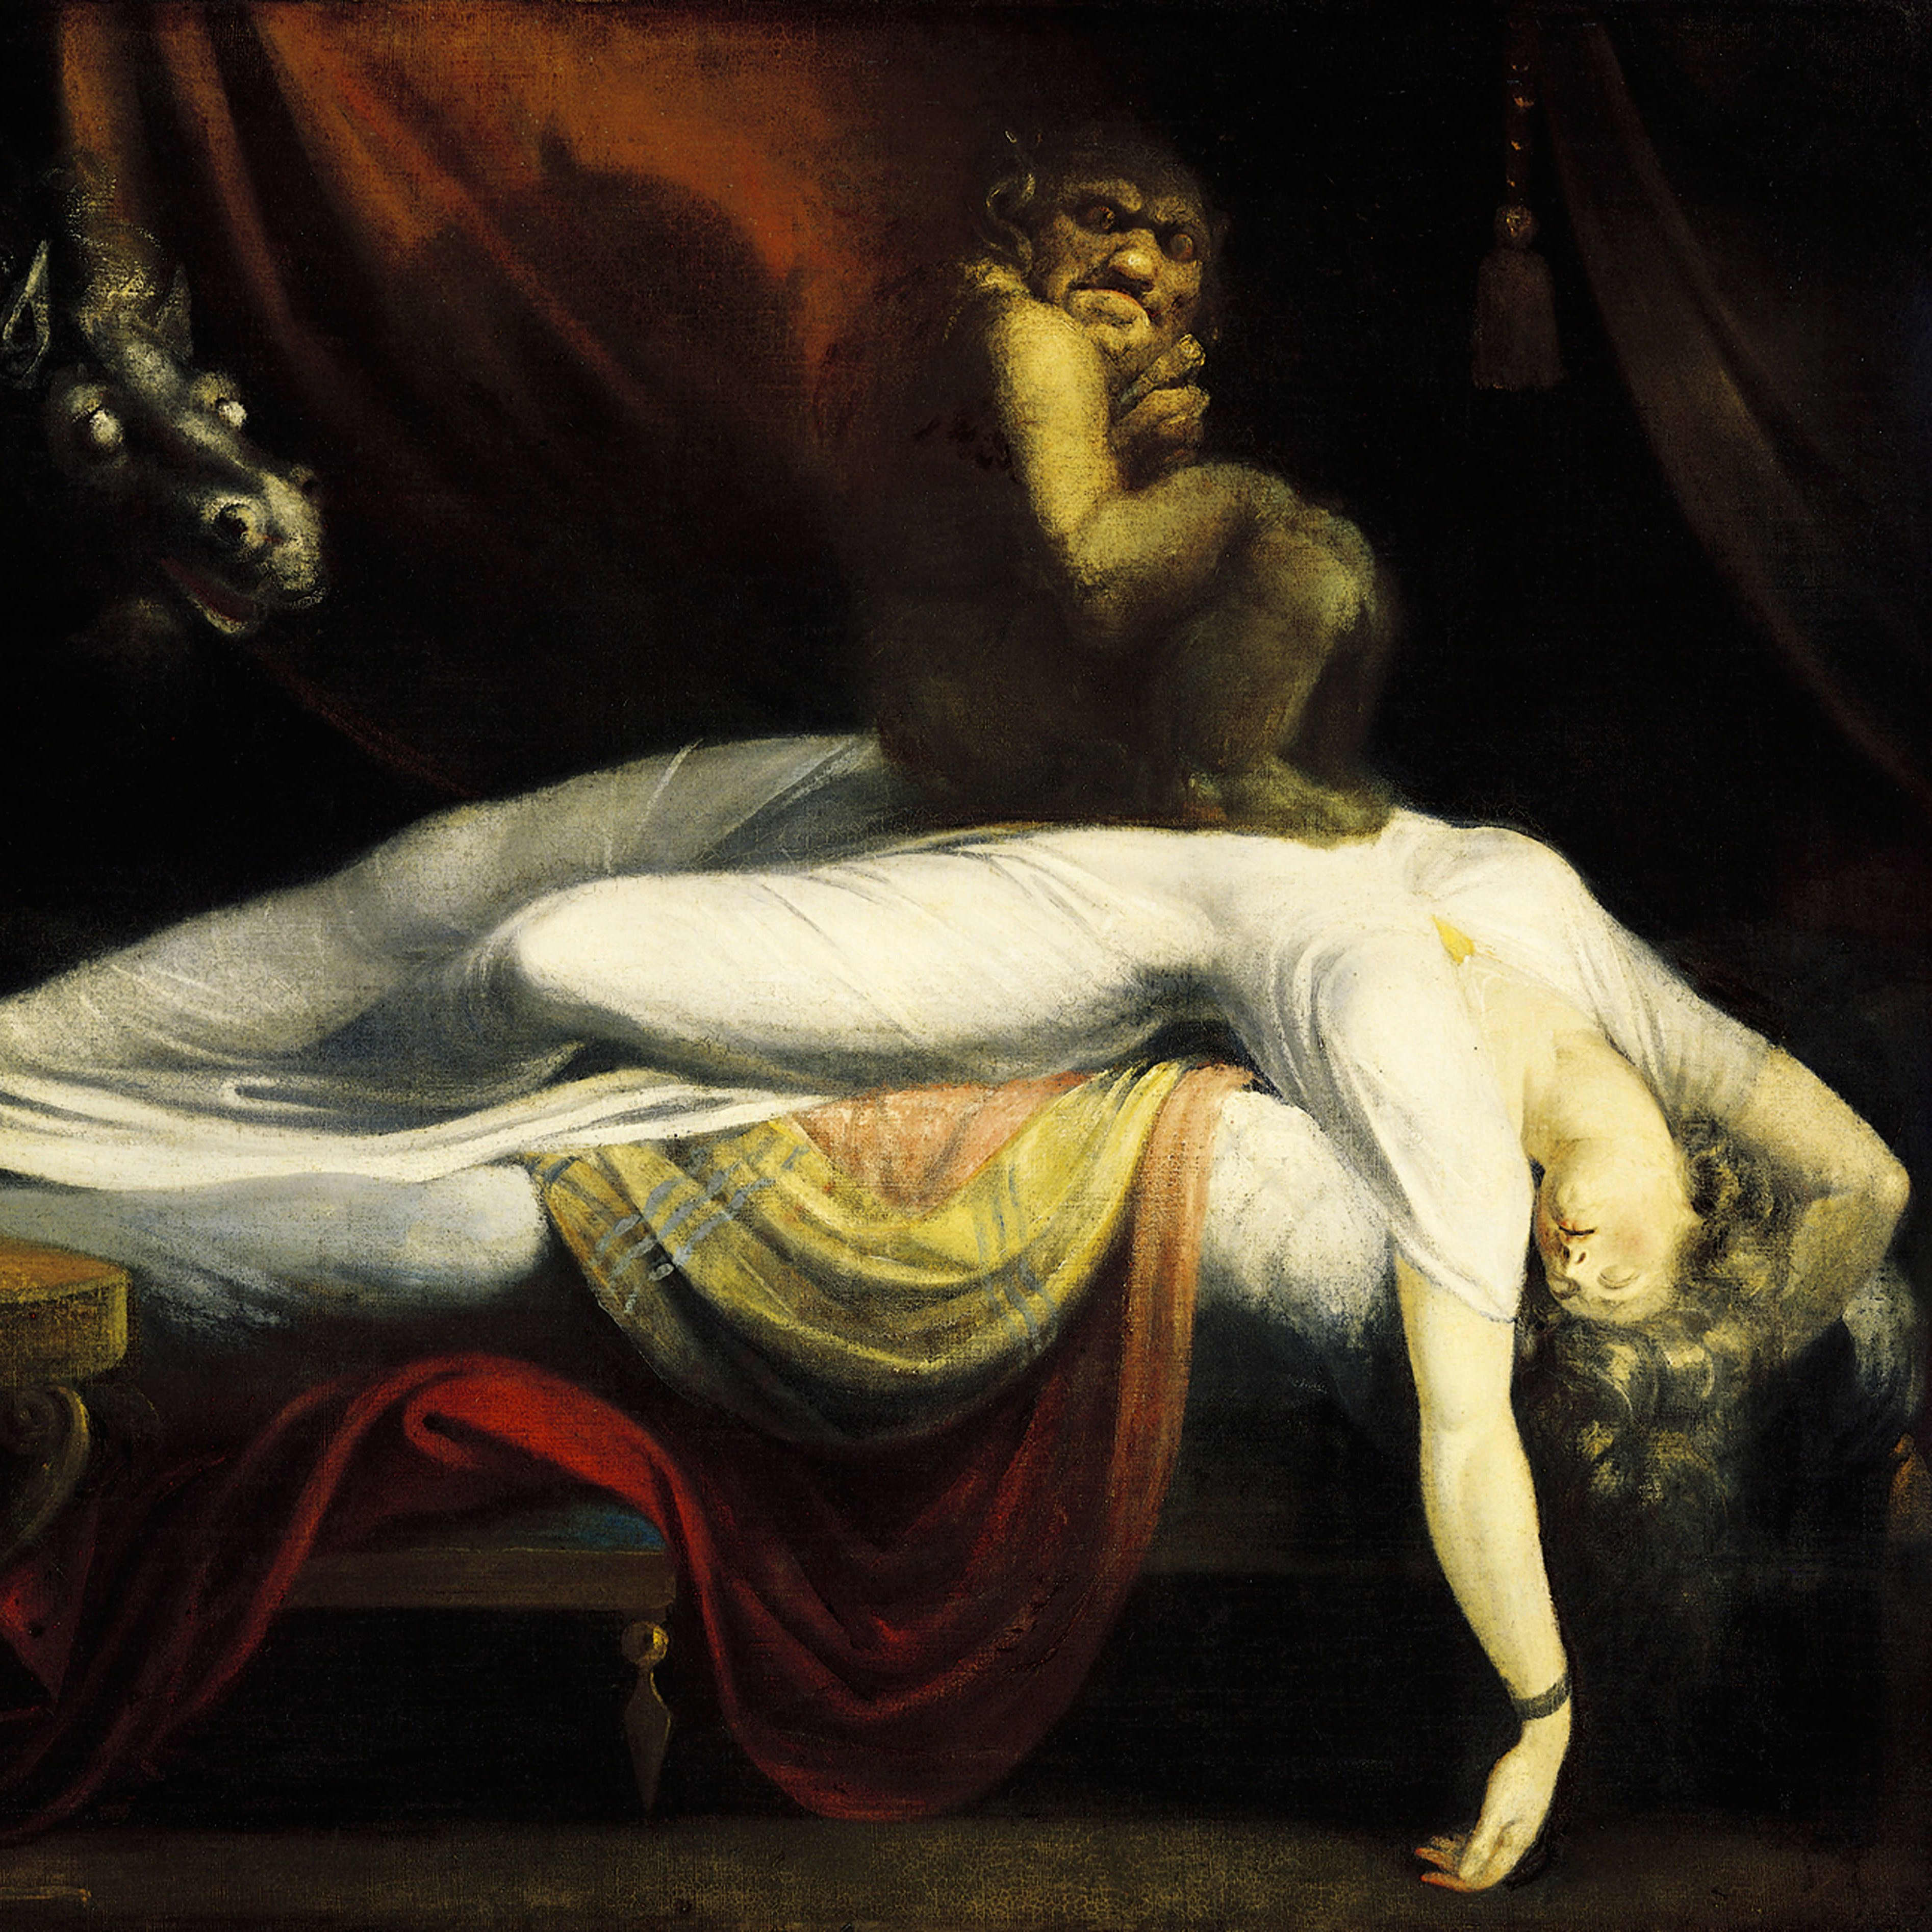 John Henry Fuselin maalaus Painajainen. Naista riivaavat demonit. 
John Henry Fuselin maalaus Painajainen (1781), jossa demonit riivaavat naista.  Fuselin maalaus on eräänlainen lähtölaukaus aikakautensa gotiikkaan ja kauhuromantiikkaan. Maalauksen teemoja ja visuaalista ilmettä on myöhemmin jäljitelty useissa eri yhteyksissä. 